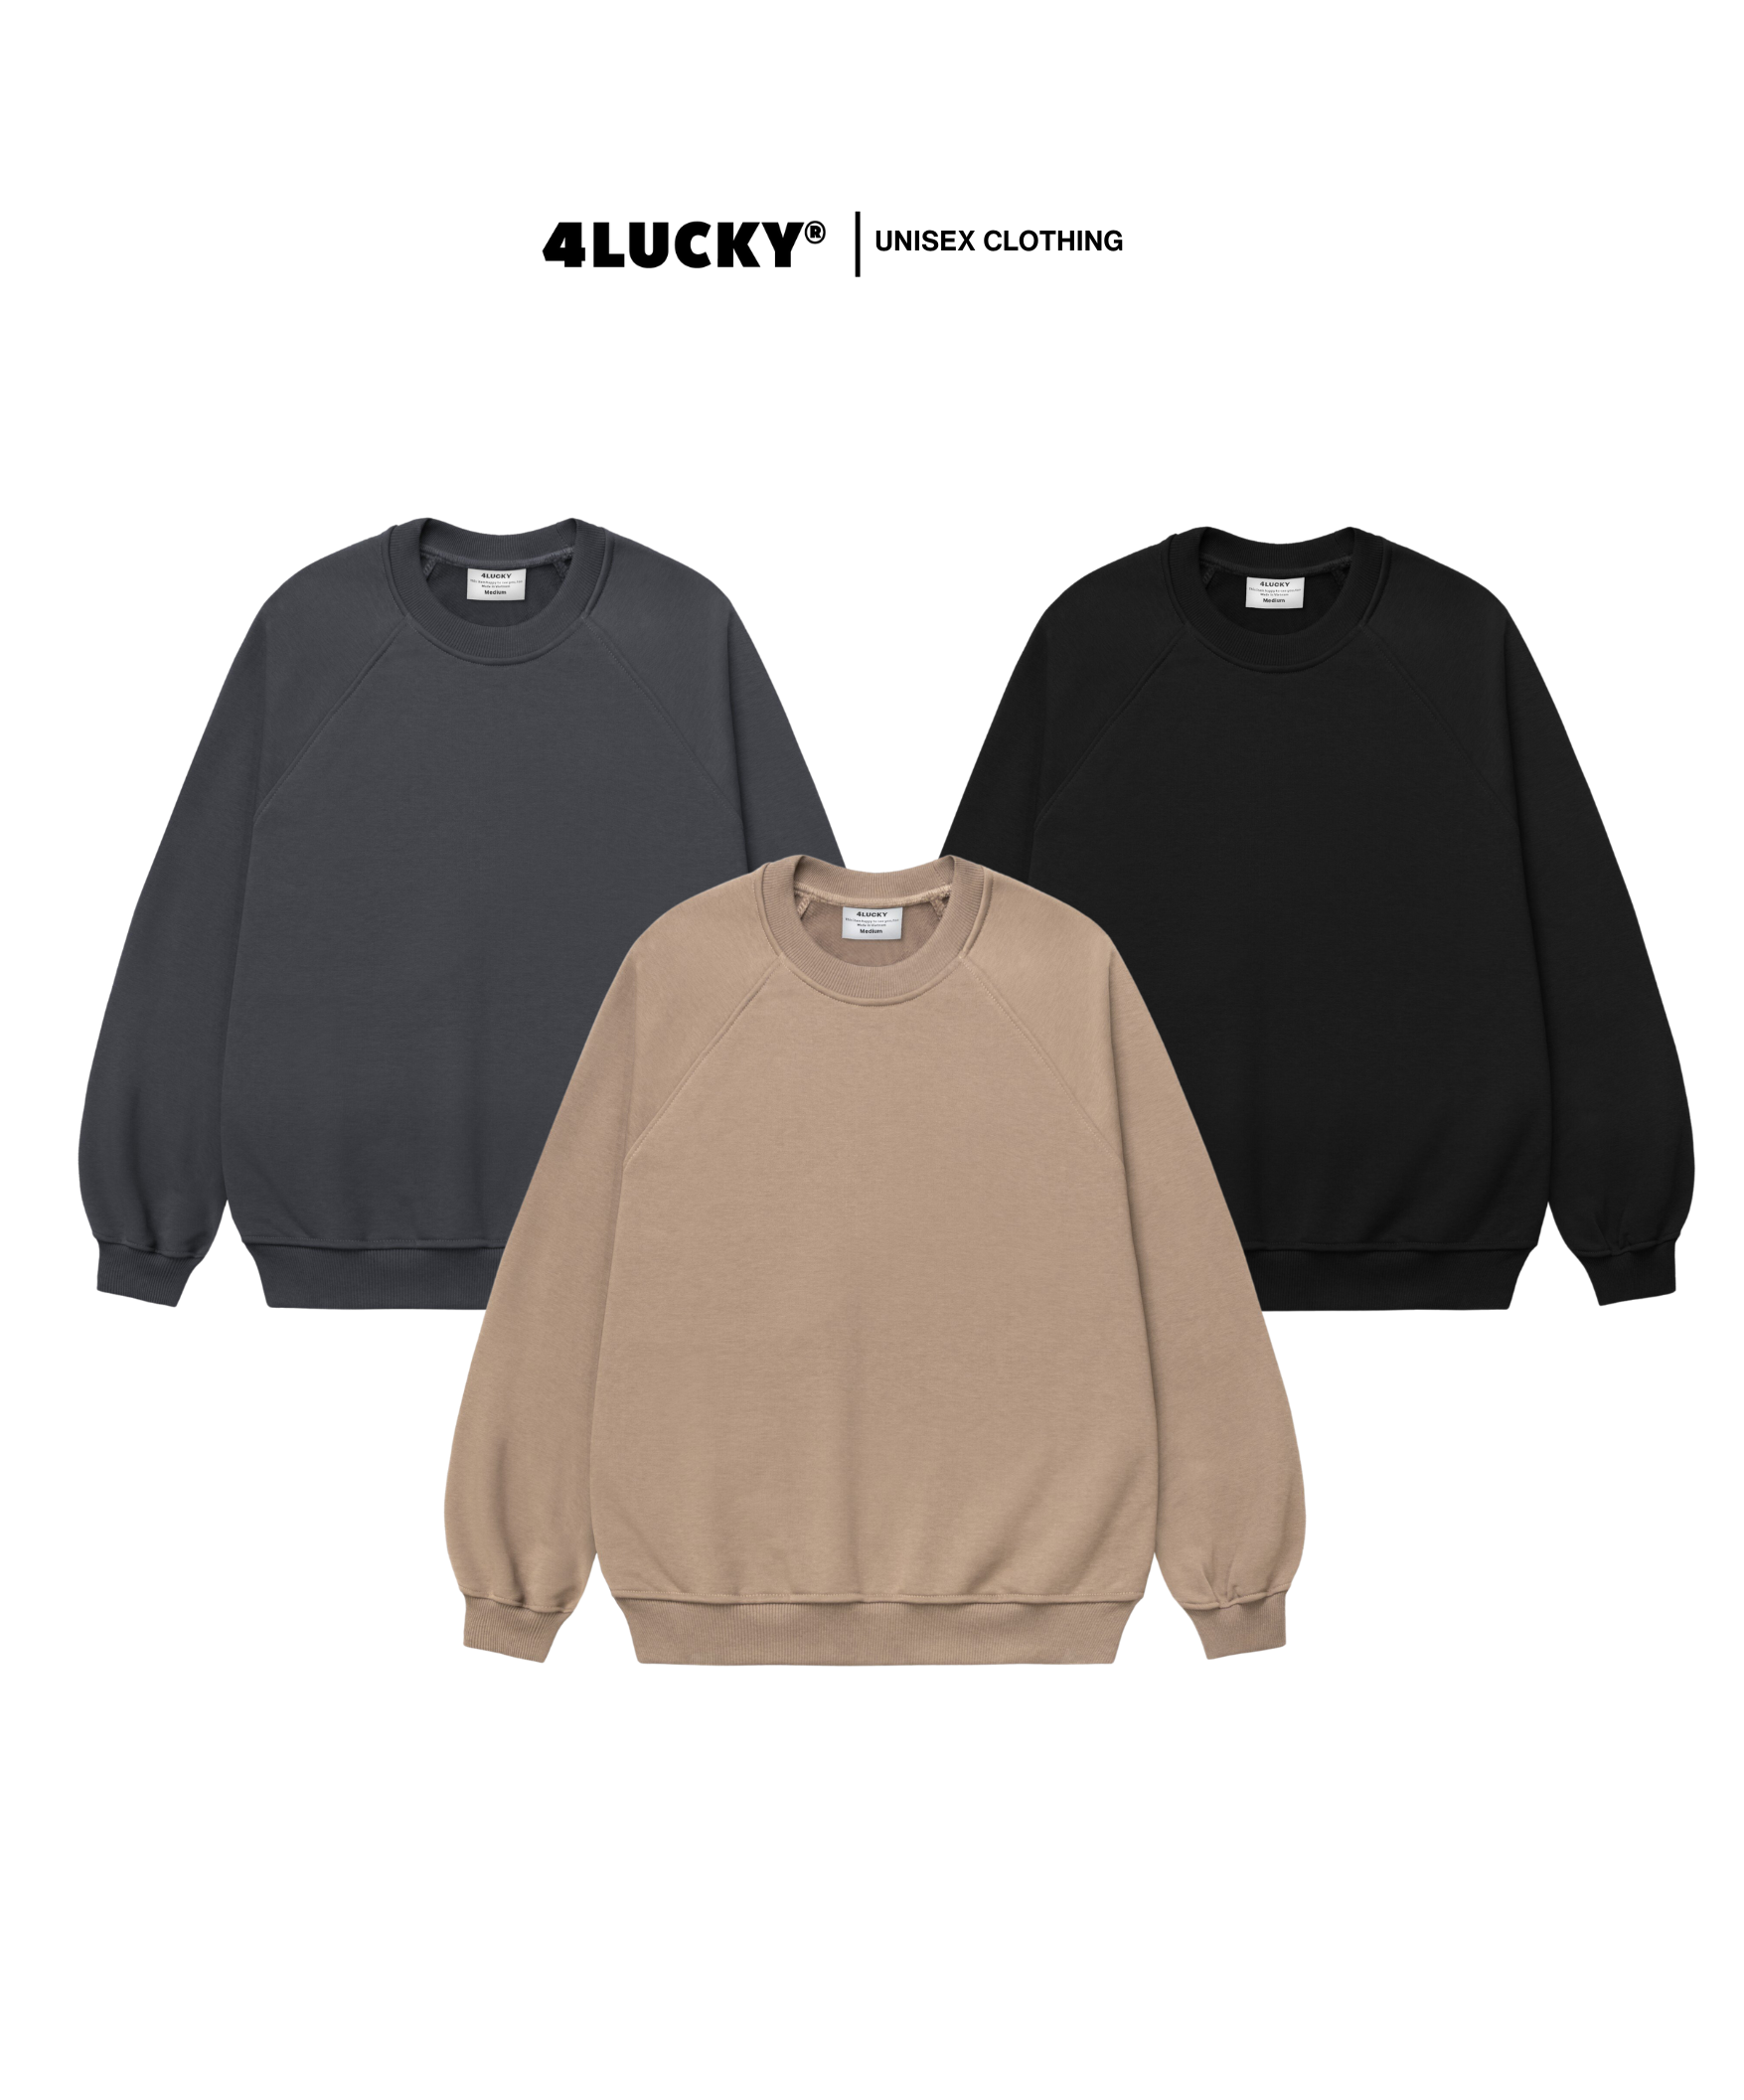 Áo sweater basic 4lucky 6119, form rộng dày dặn ấm áp